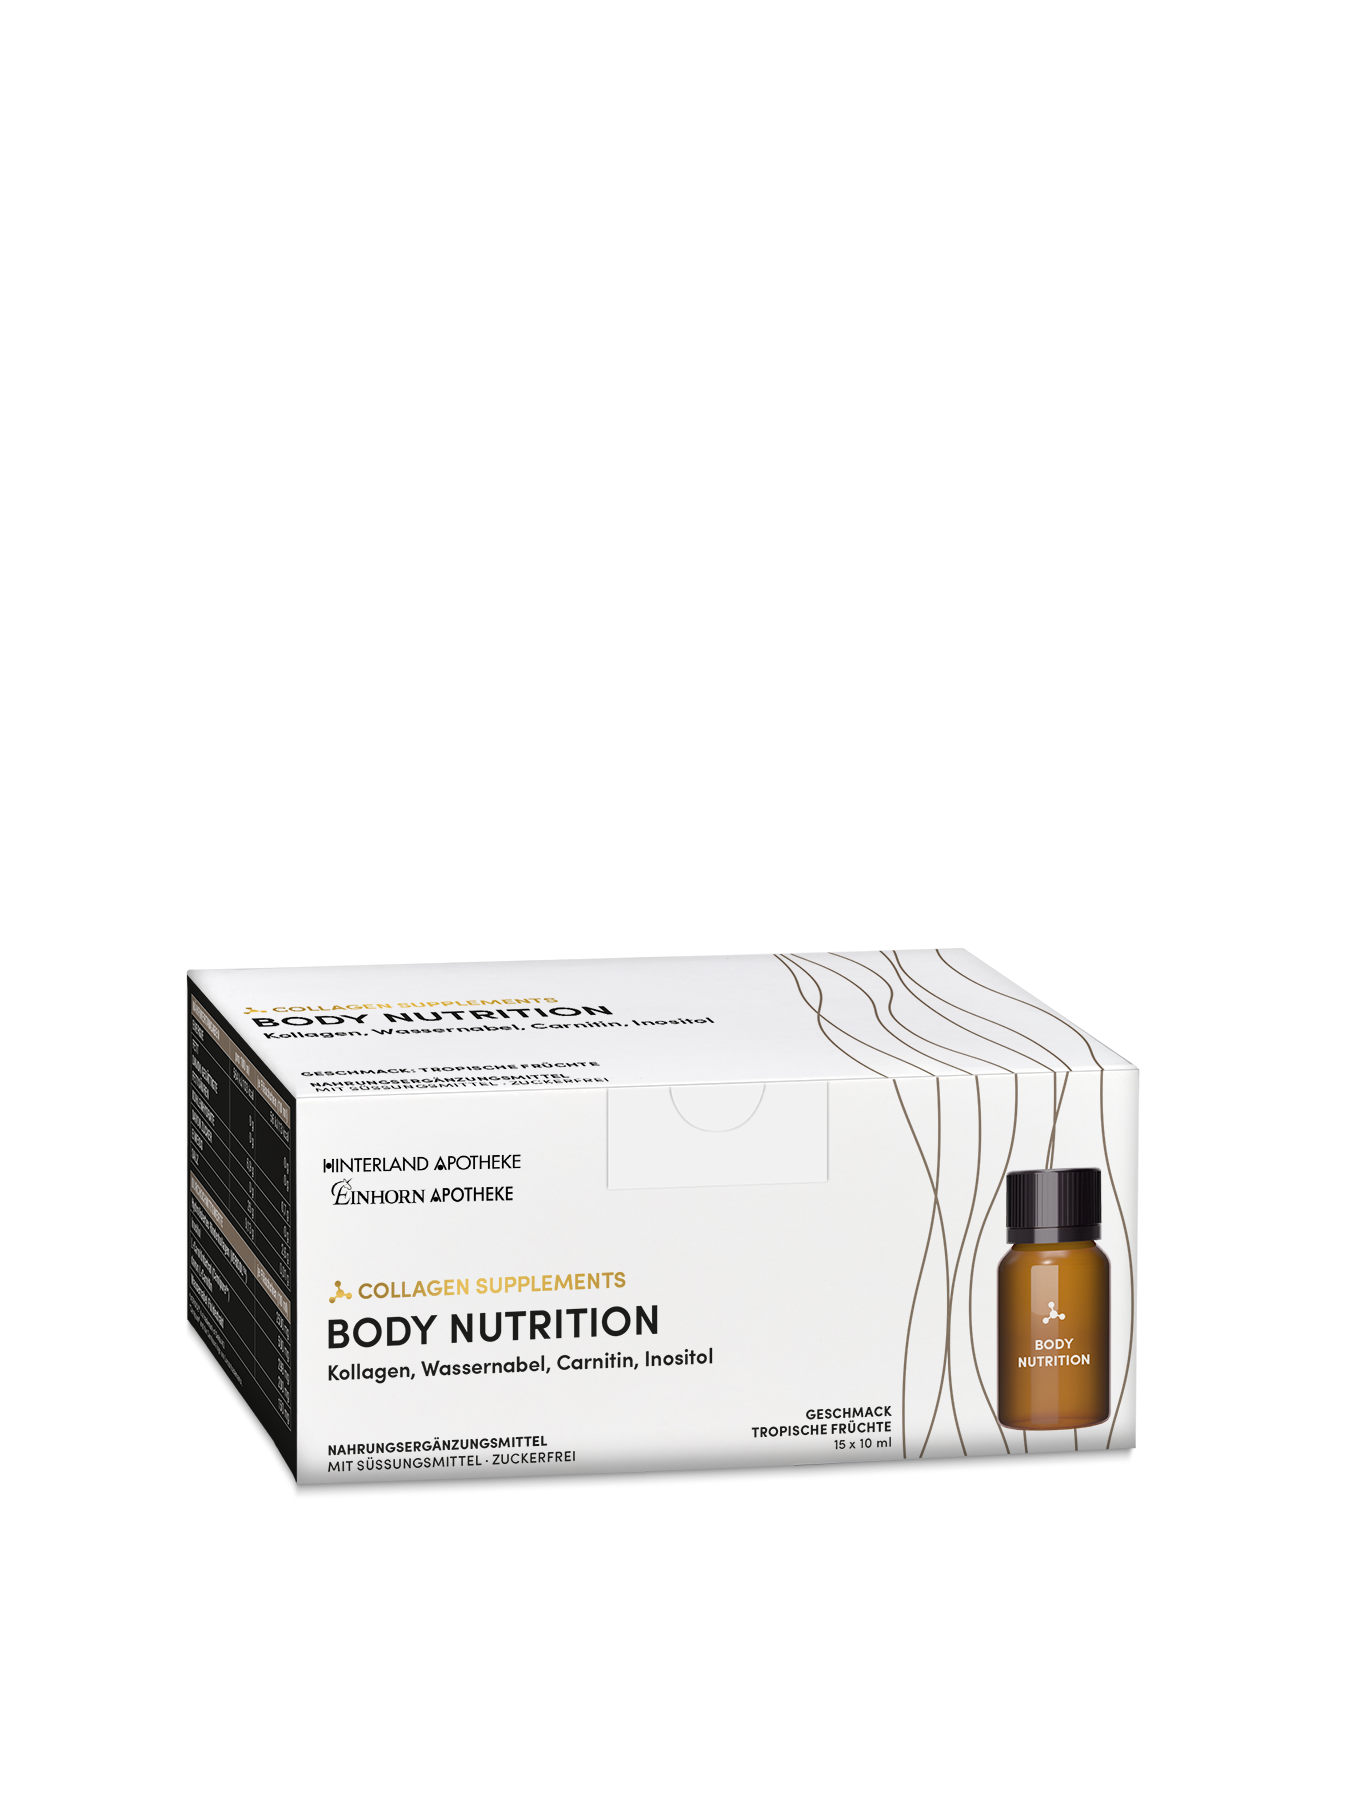 Collagen supplements Body nutrition 15 mal 10 milliliter 